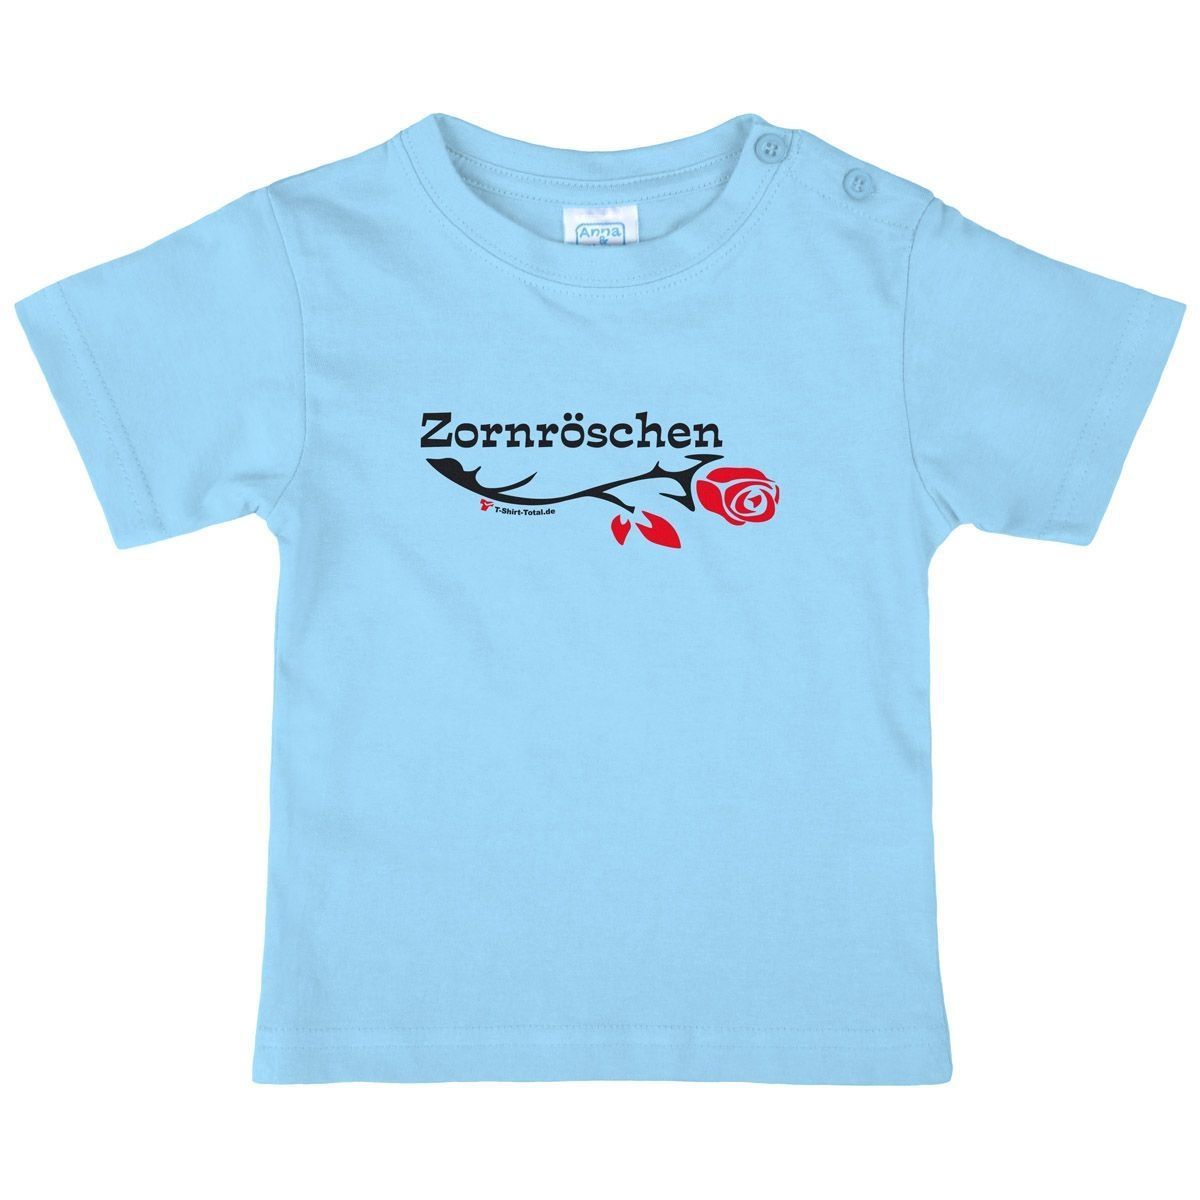 Zornröschen Kinder T-Shirt hellblau 80 / 86